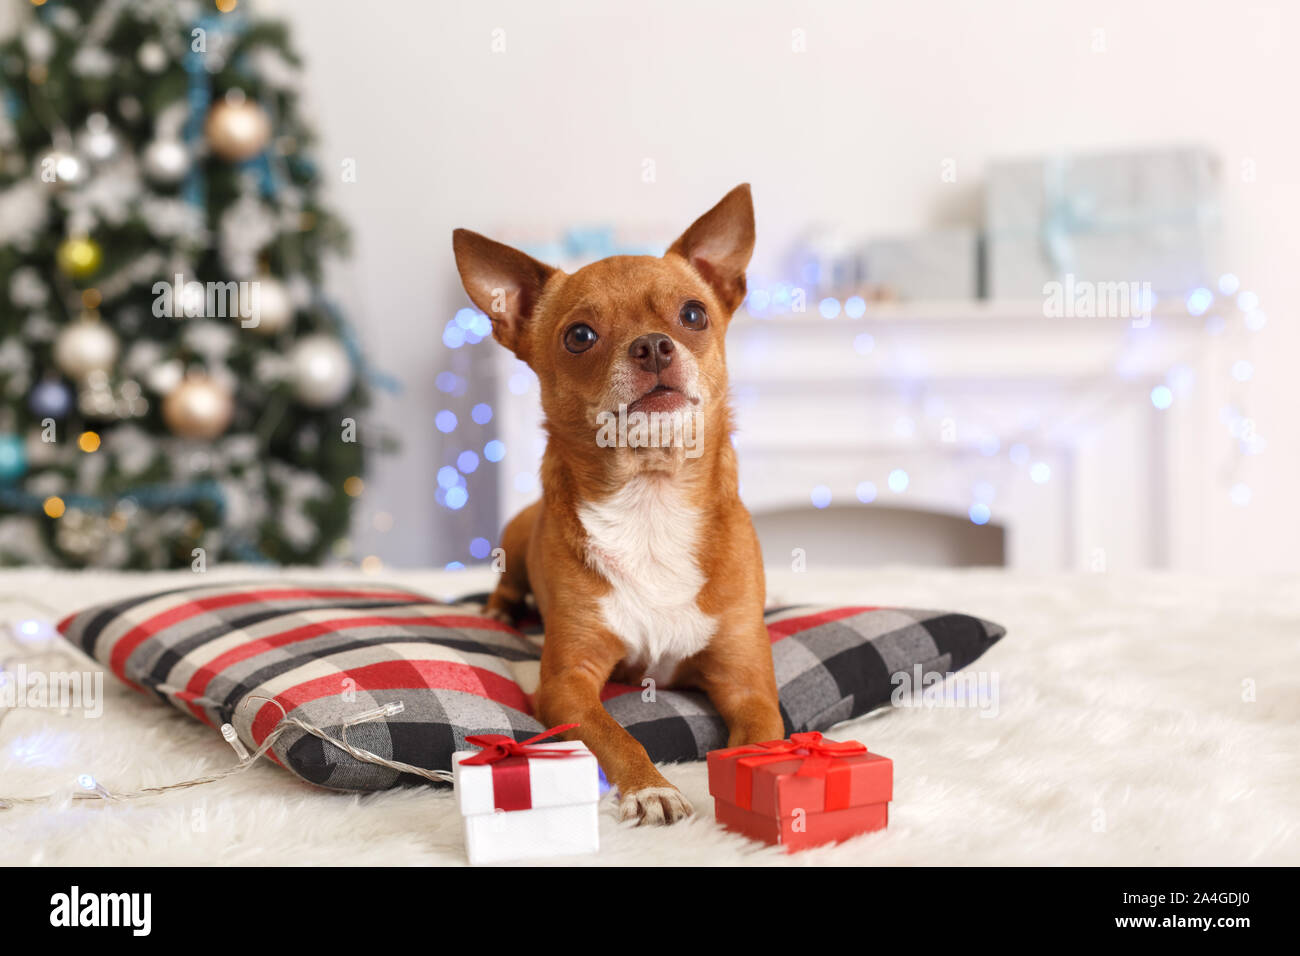 Nouvelle Année. Chambre décorée avec oreiller chien couché sur babioles et présente à la curieux appareil photo close-up Banque D'Images